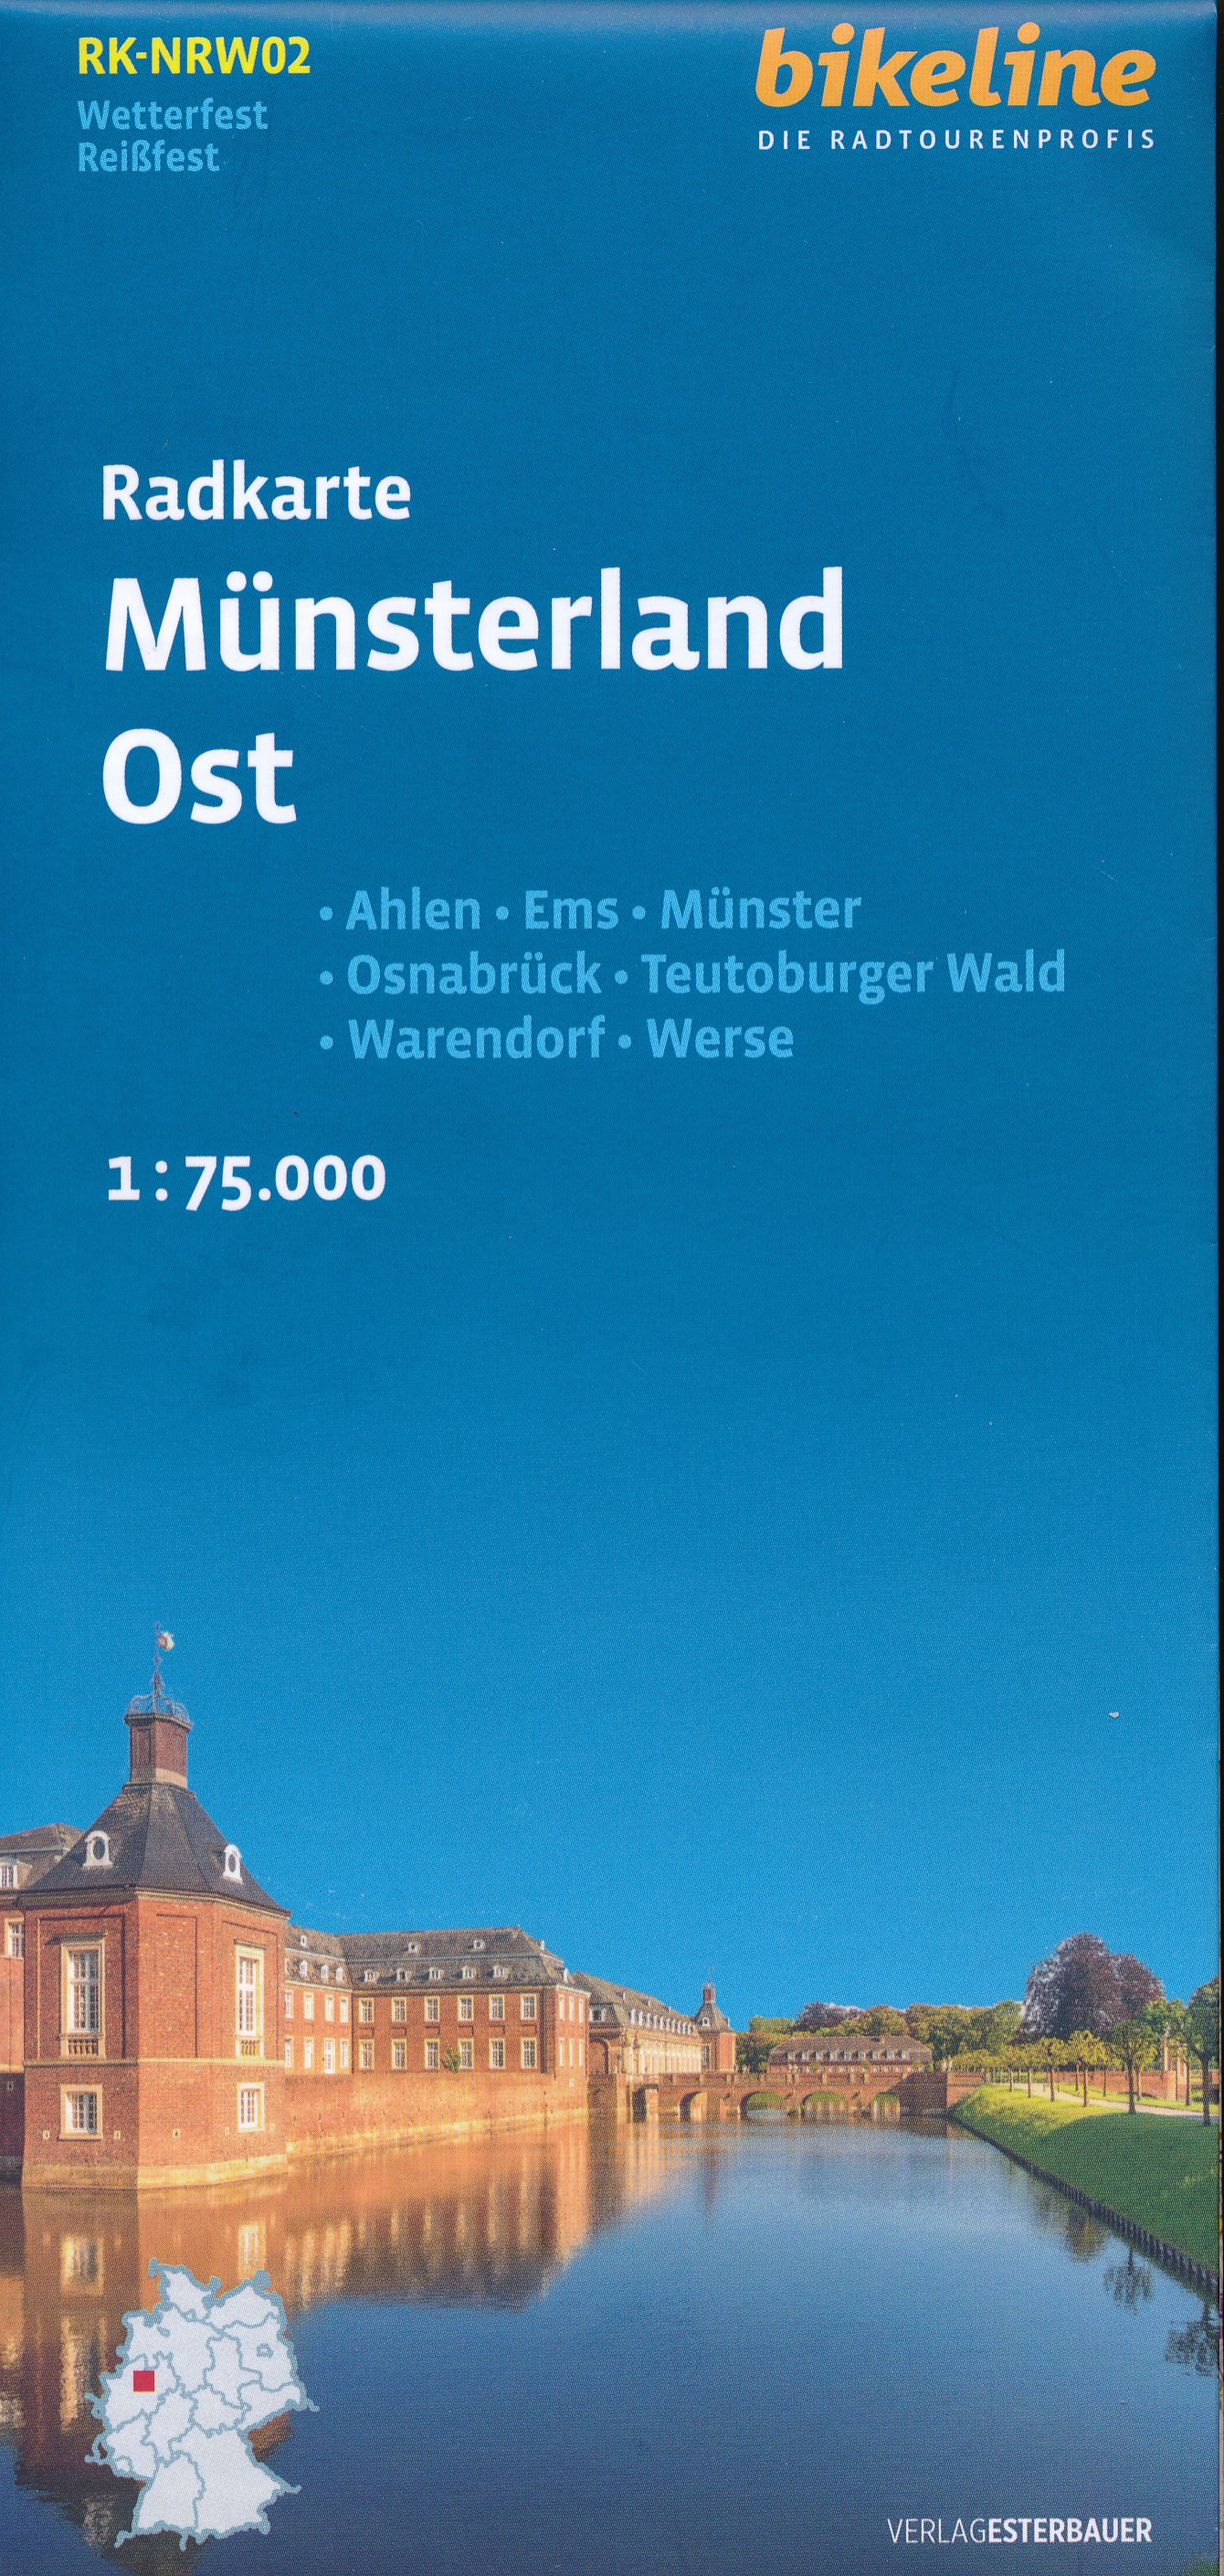 Online bestellen: Fietskaart NRW02 Bikeline Radkarte Münsterland Ost | Esterbauer